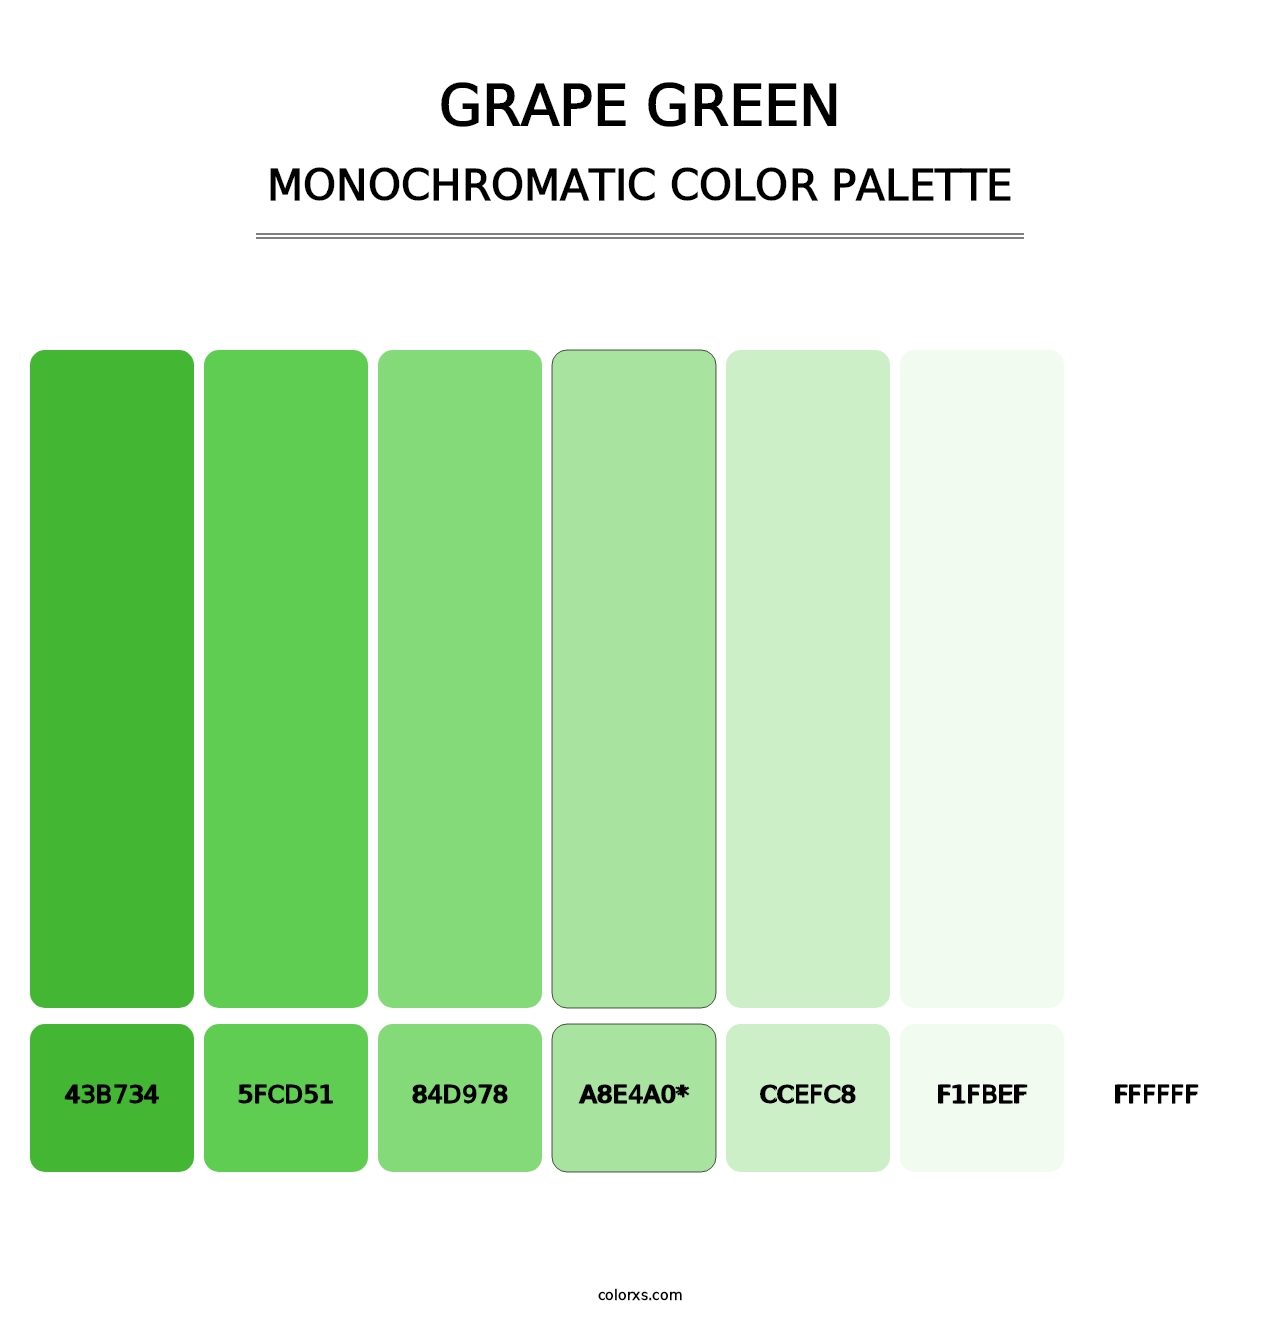 Grape Green - Monochromatic Color Palette